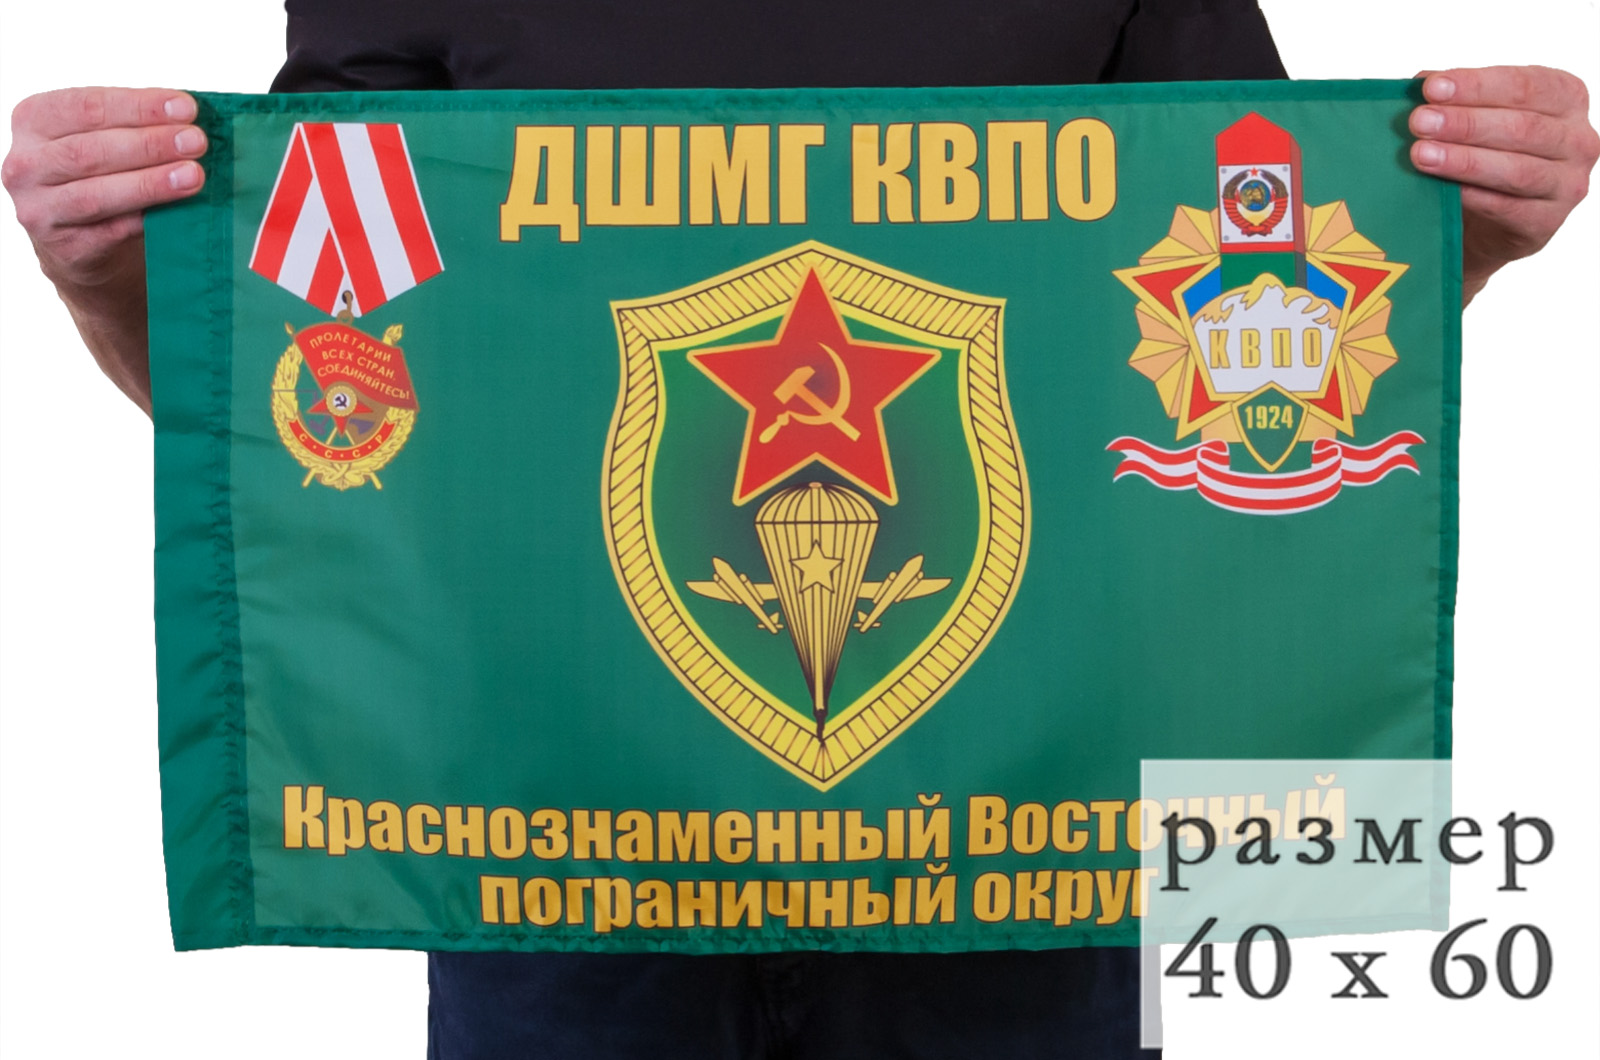 Флаг "ДШМГ КВПО" 